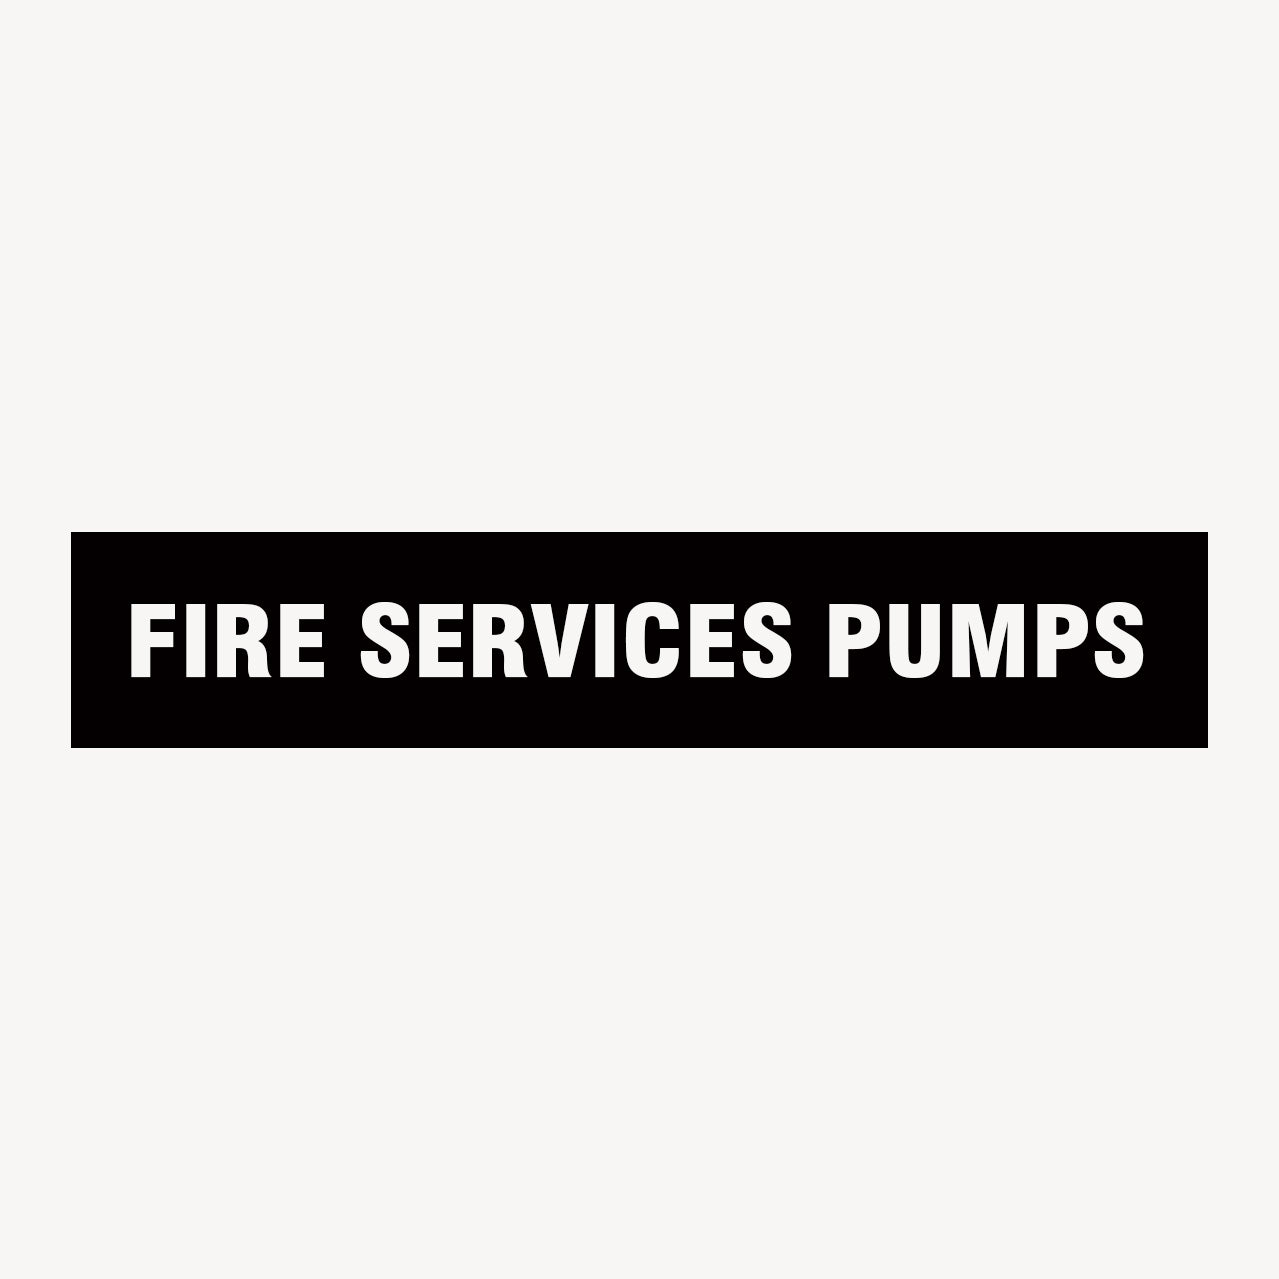 FIRE SERVICES PUMPS SIGN